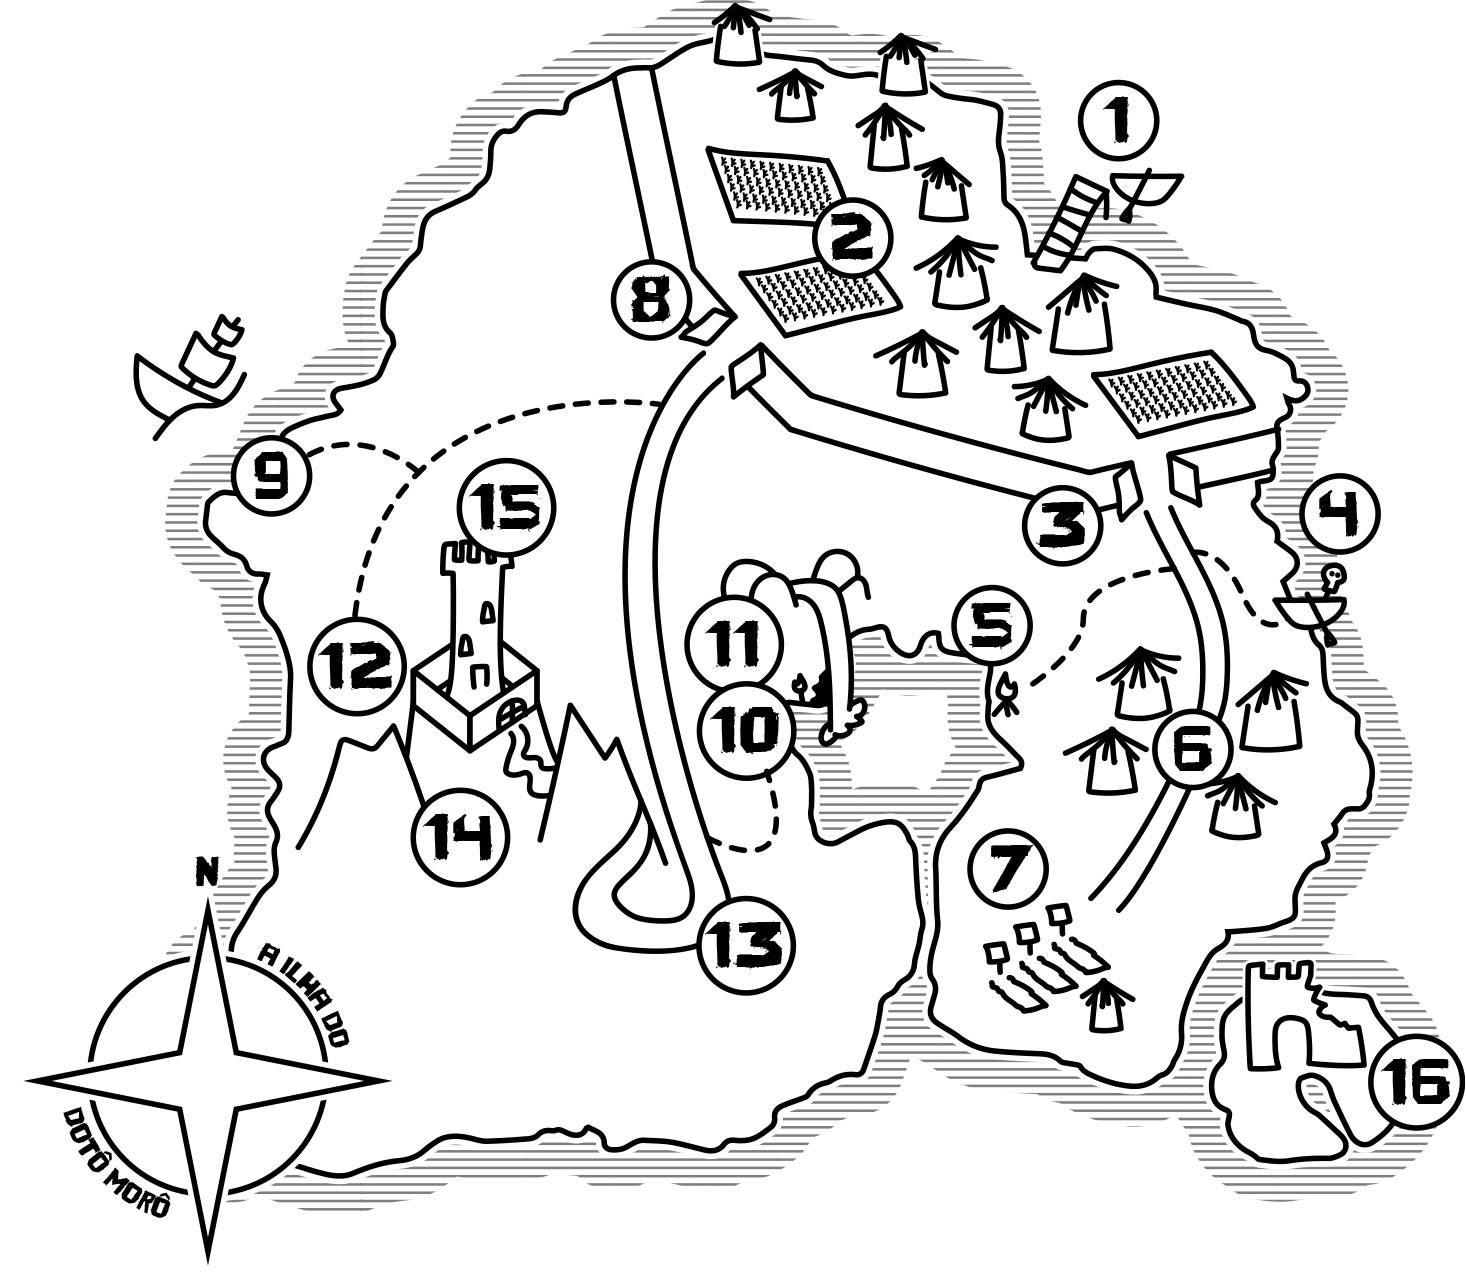 The map of the Dotô Morô island